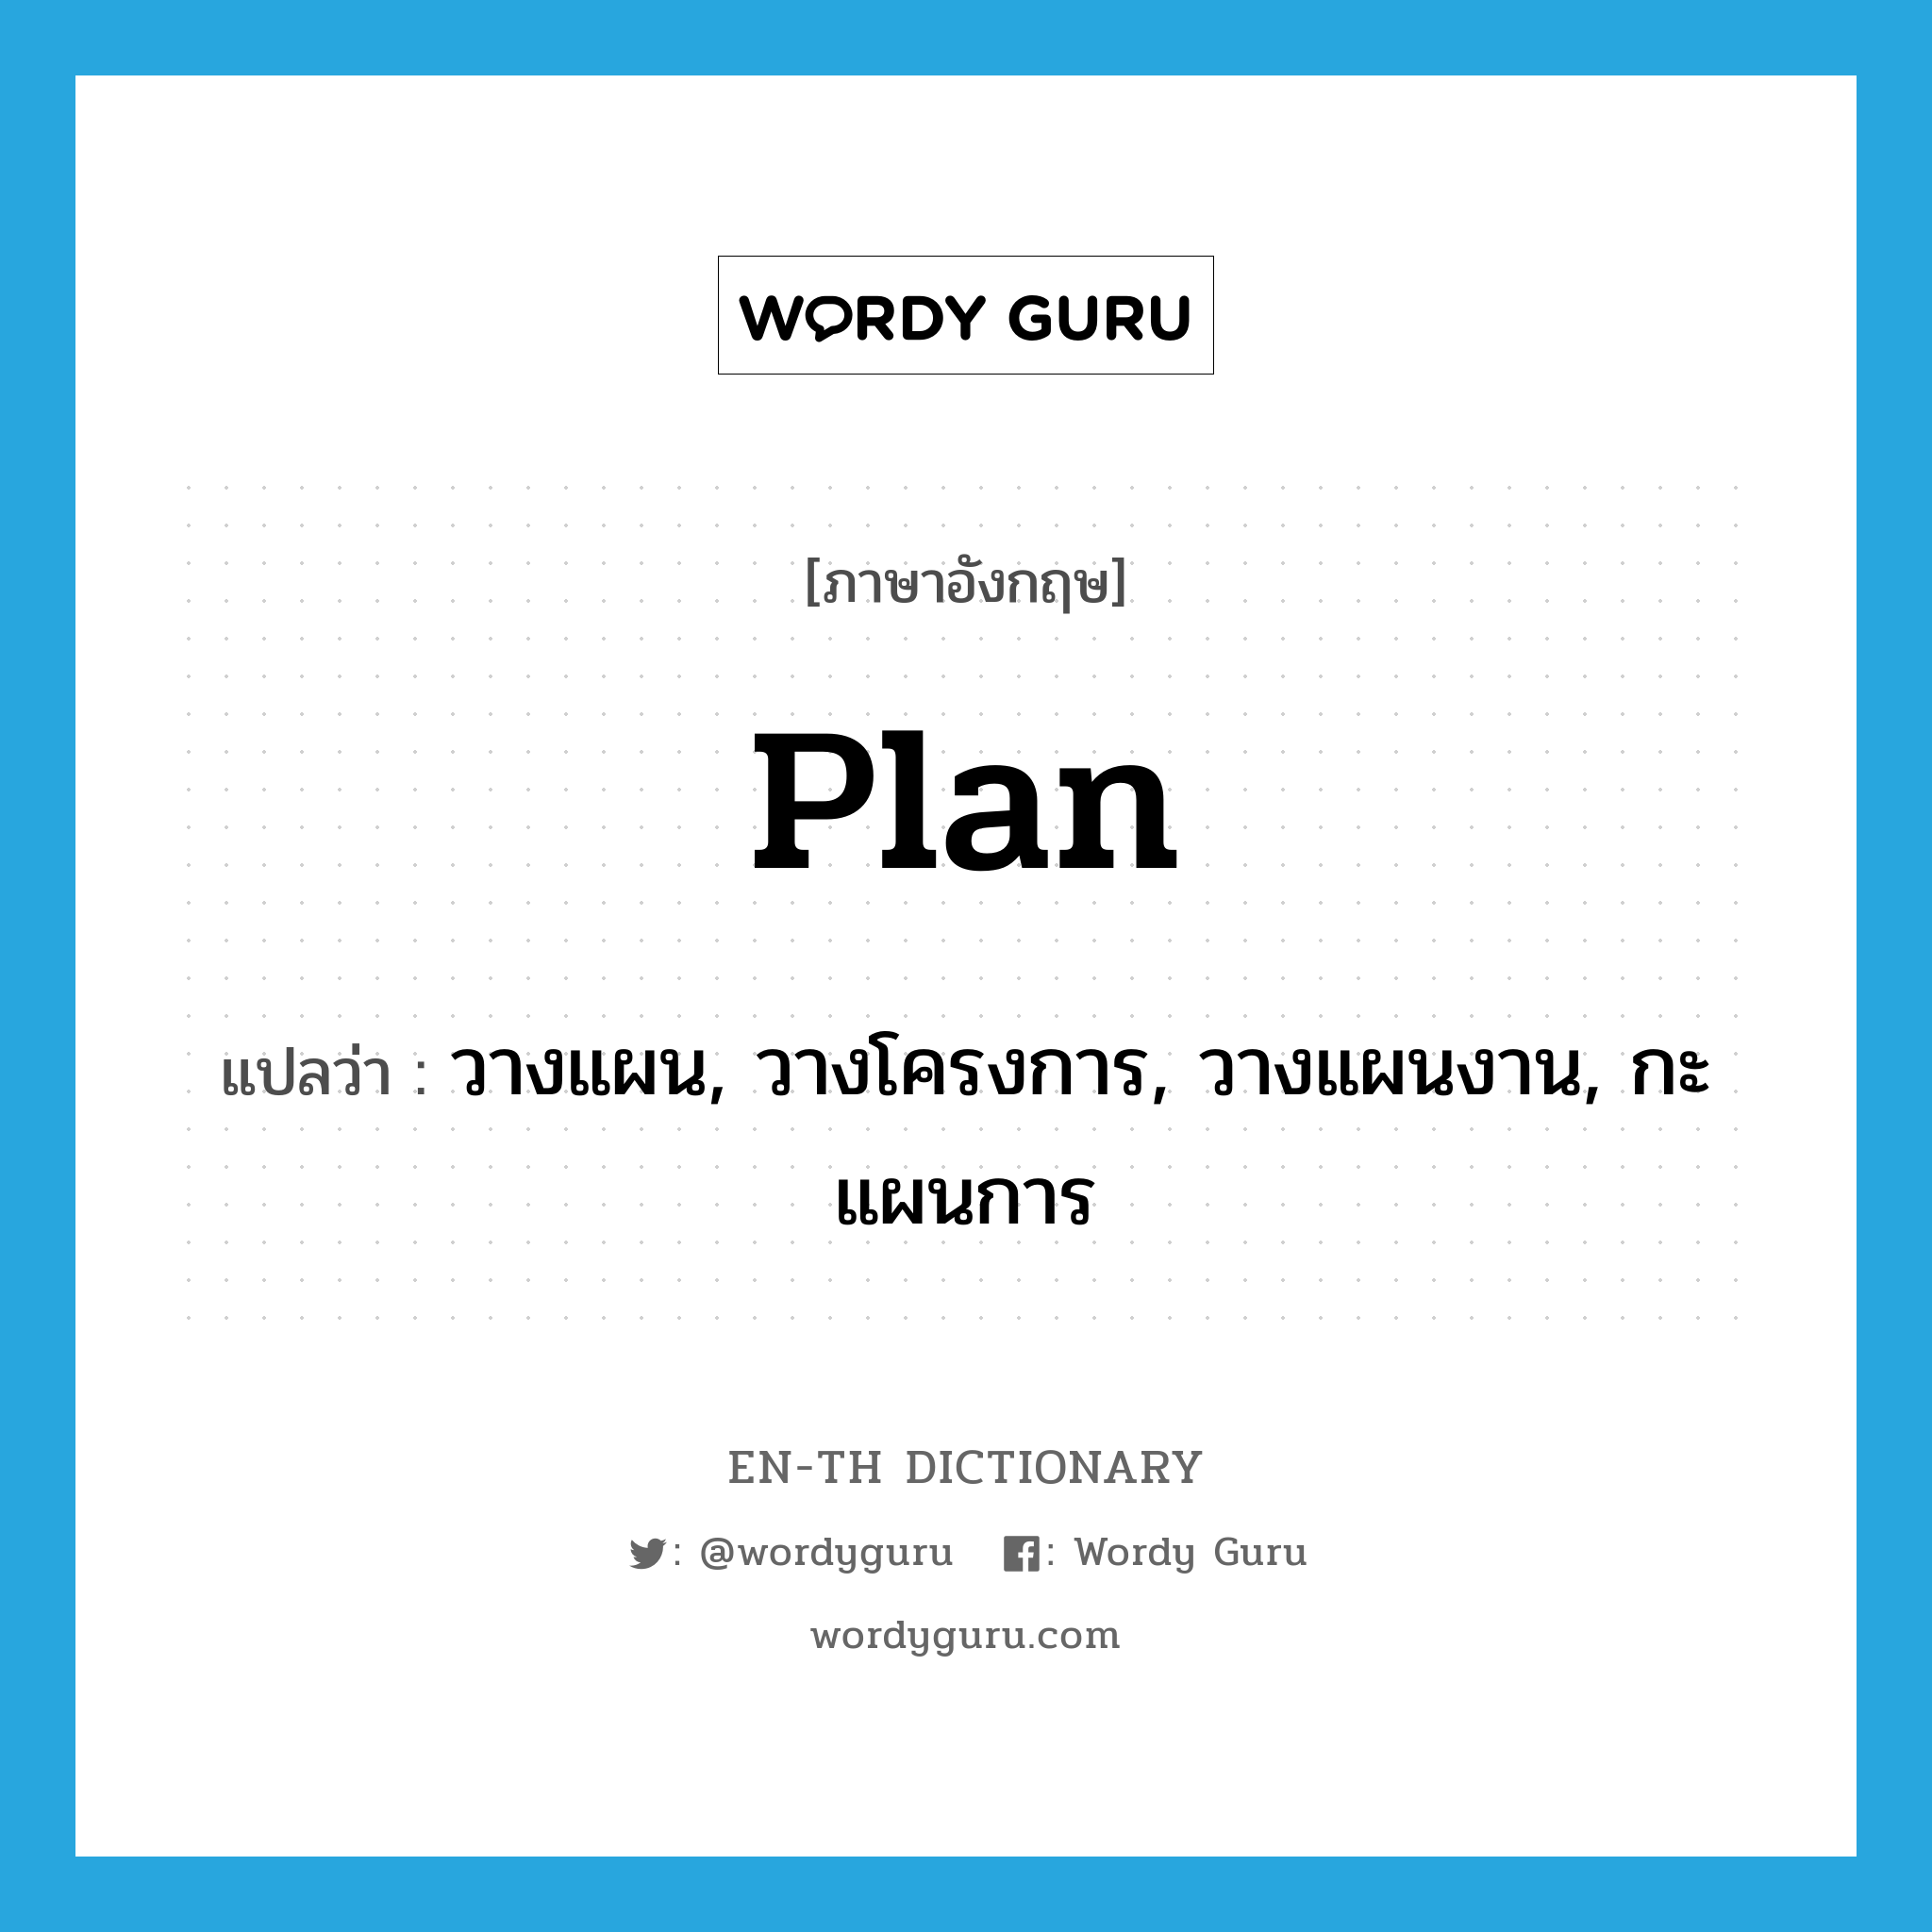 วางแผน, วางโครงการ, วางแผนงาน, กะแผนการ ภาษาอังกฤษ?, คำศัพท์ภาษาอังกฤษ วางแผน, วางโครงการ, วางแผนงาน, กะแผนการ แปลว่า plan ประเภท VT หมวด VT